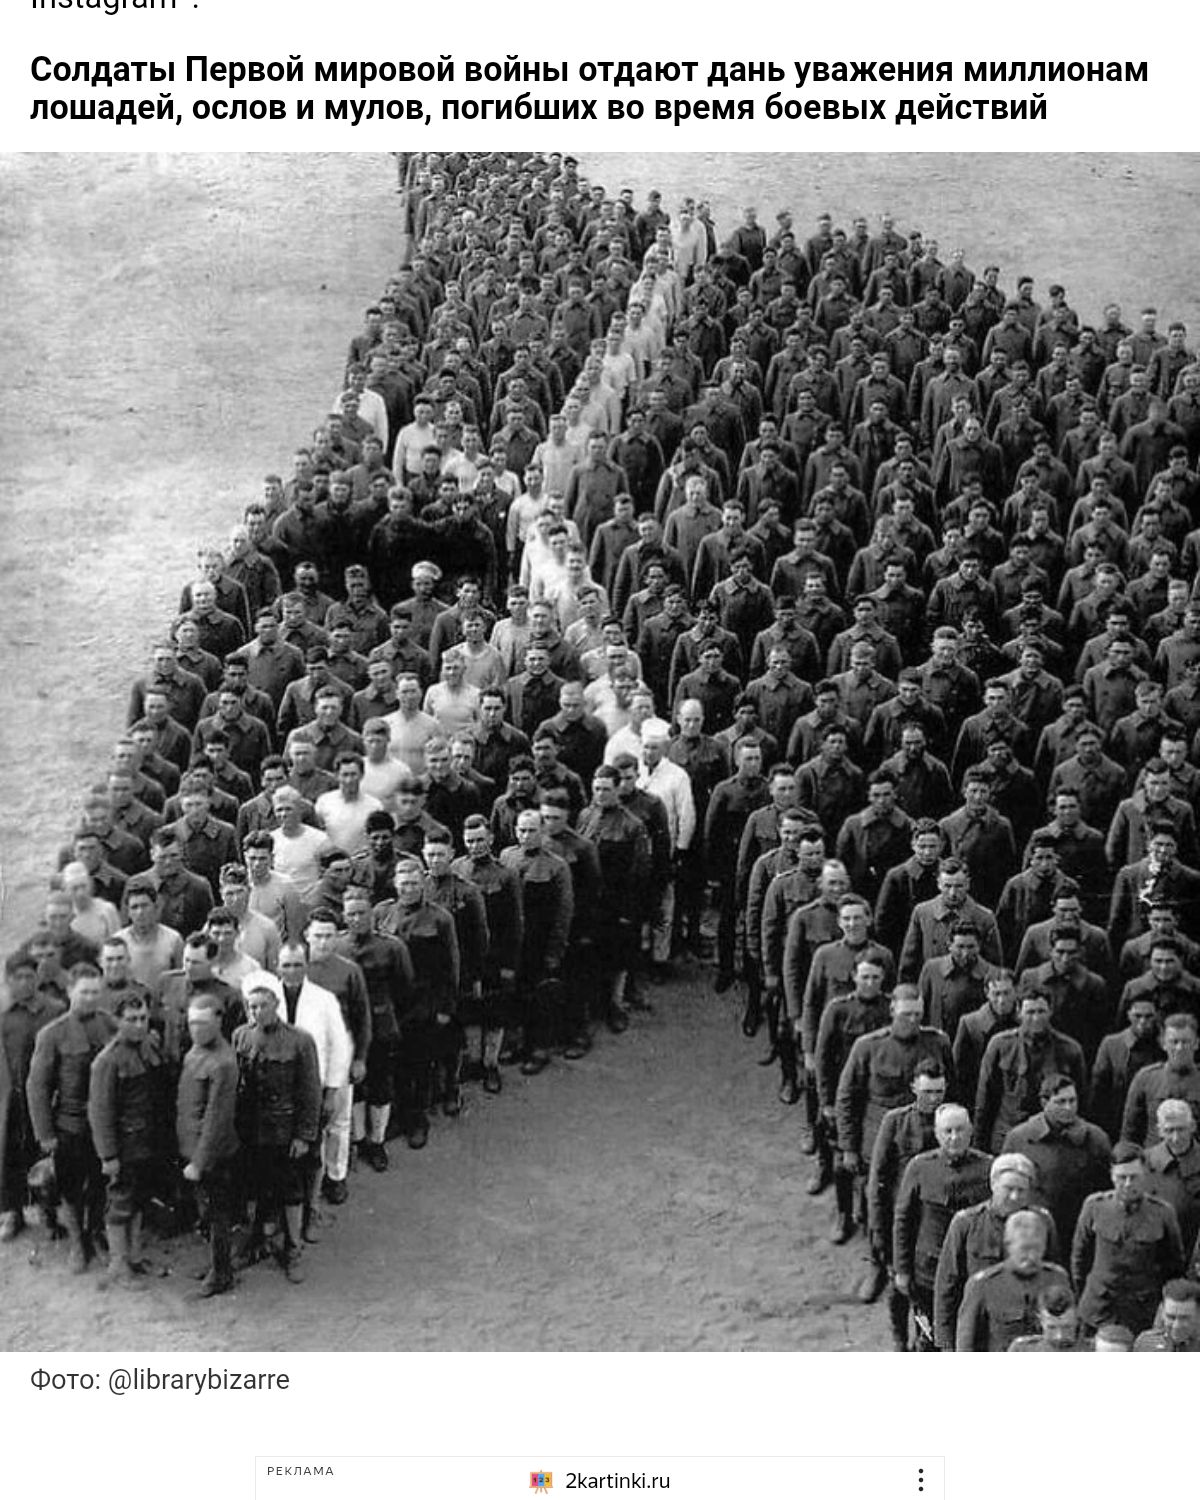 Сплдыы Пер мировой ппйны мда дань уважения миллионам лошадей если МУшц псгиБших не время бан ых действ